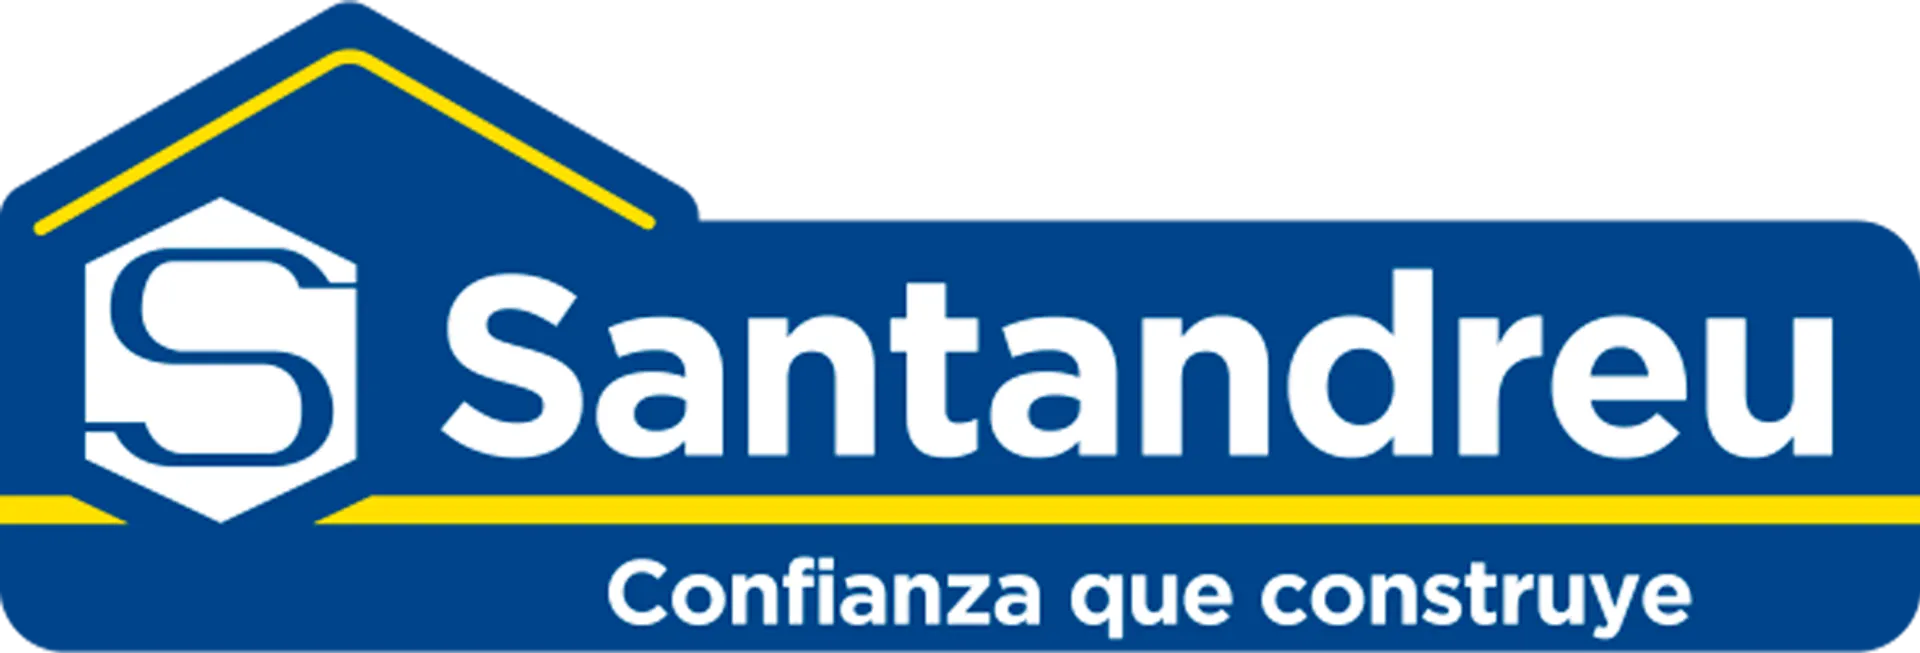 SANTANDREU logo